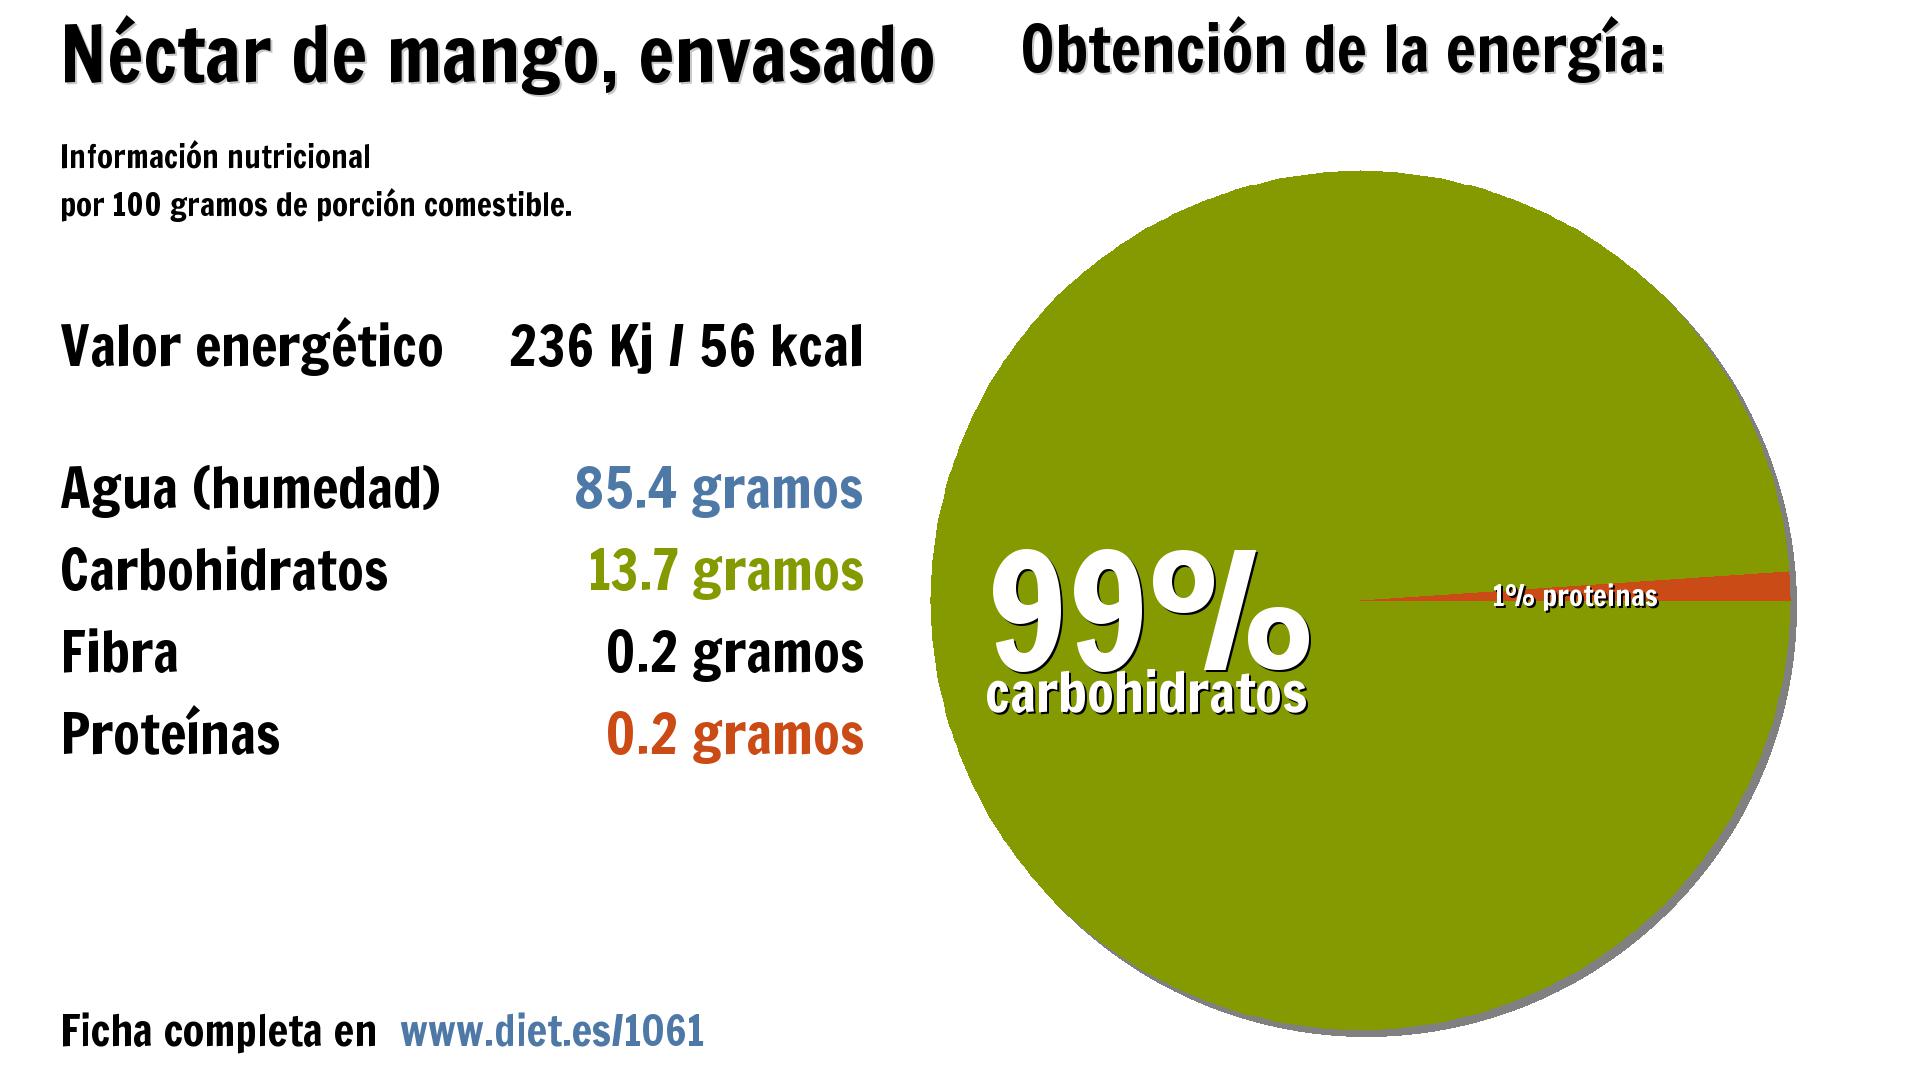 Néctar de mango, envasado: energía 236 Kj, agua 85 g. y carbohidratos 14 g.